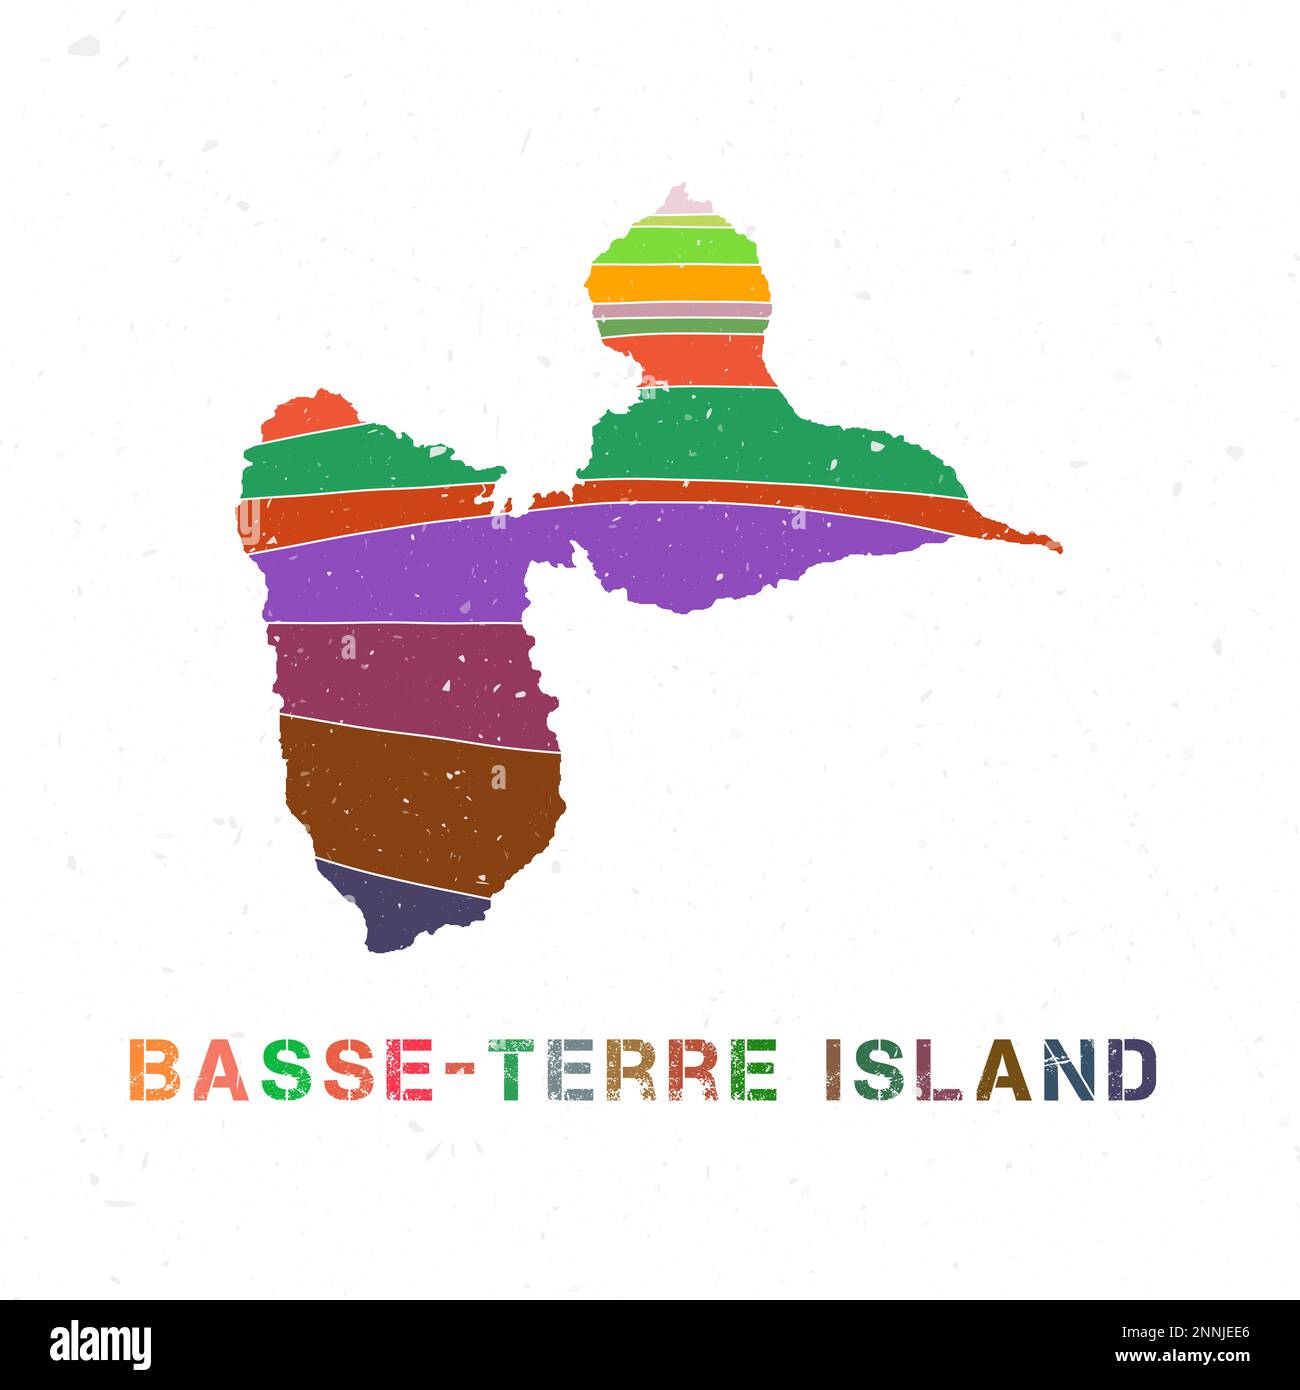 Conception de la carte de l'île de Basse-Terre. Forme de l'île avec de belles vagues géométriques et texture grunge. Illustration vectorielle moderne. Illustration de Vecteur